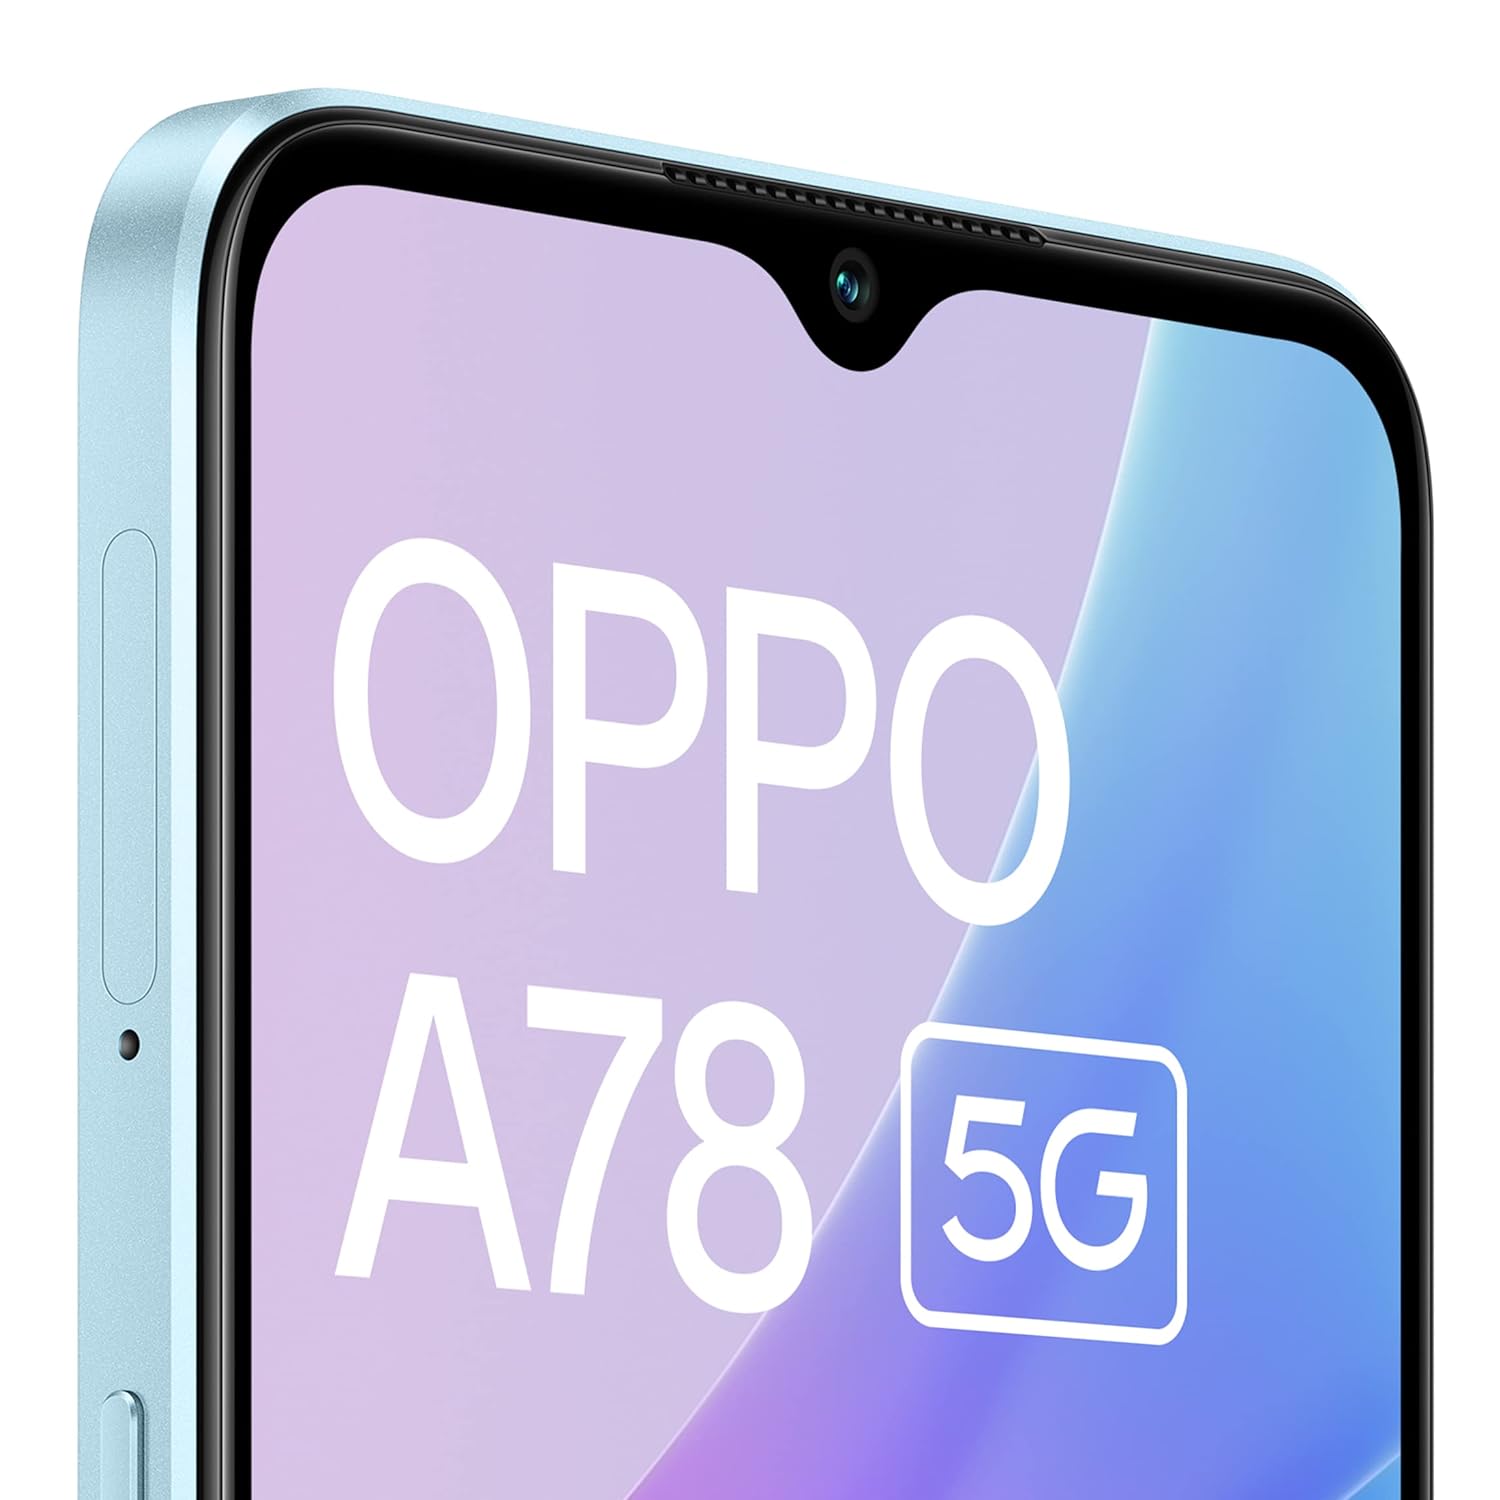 Oppo A78 5G (Glowing Blue, 128GB) (8GB RAM)